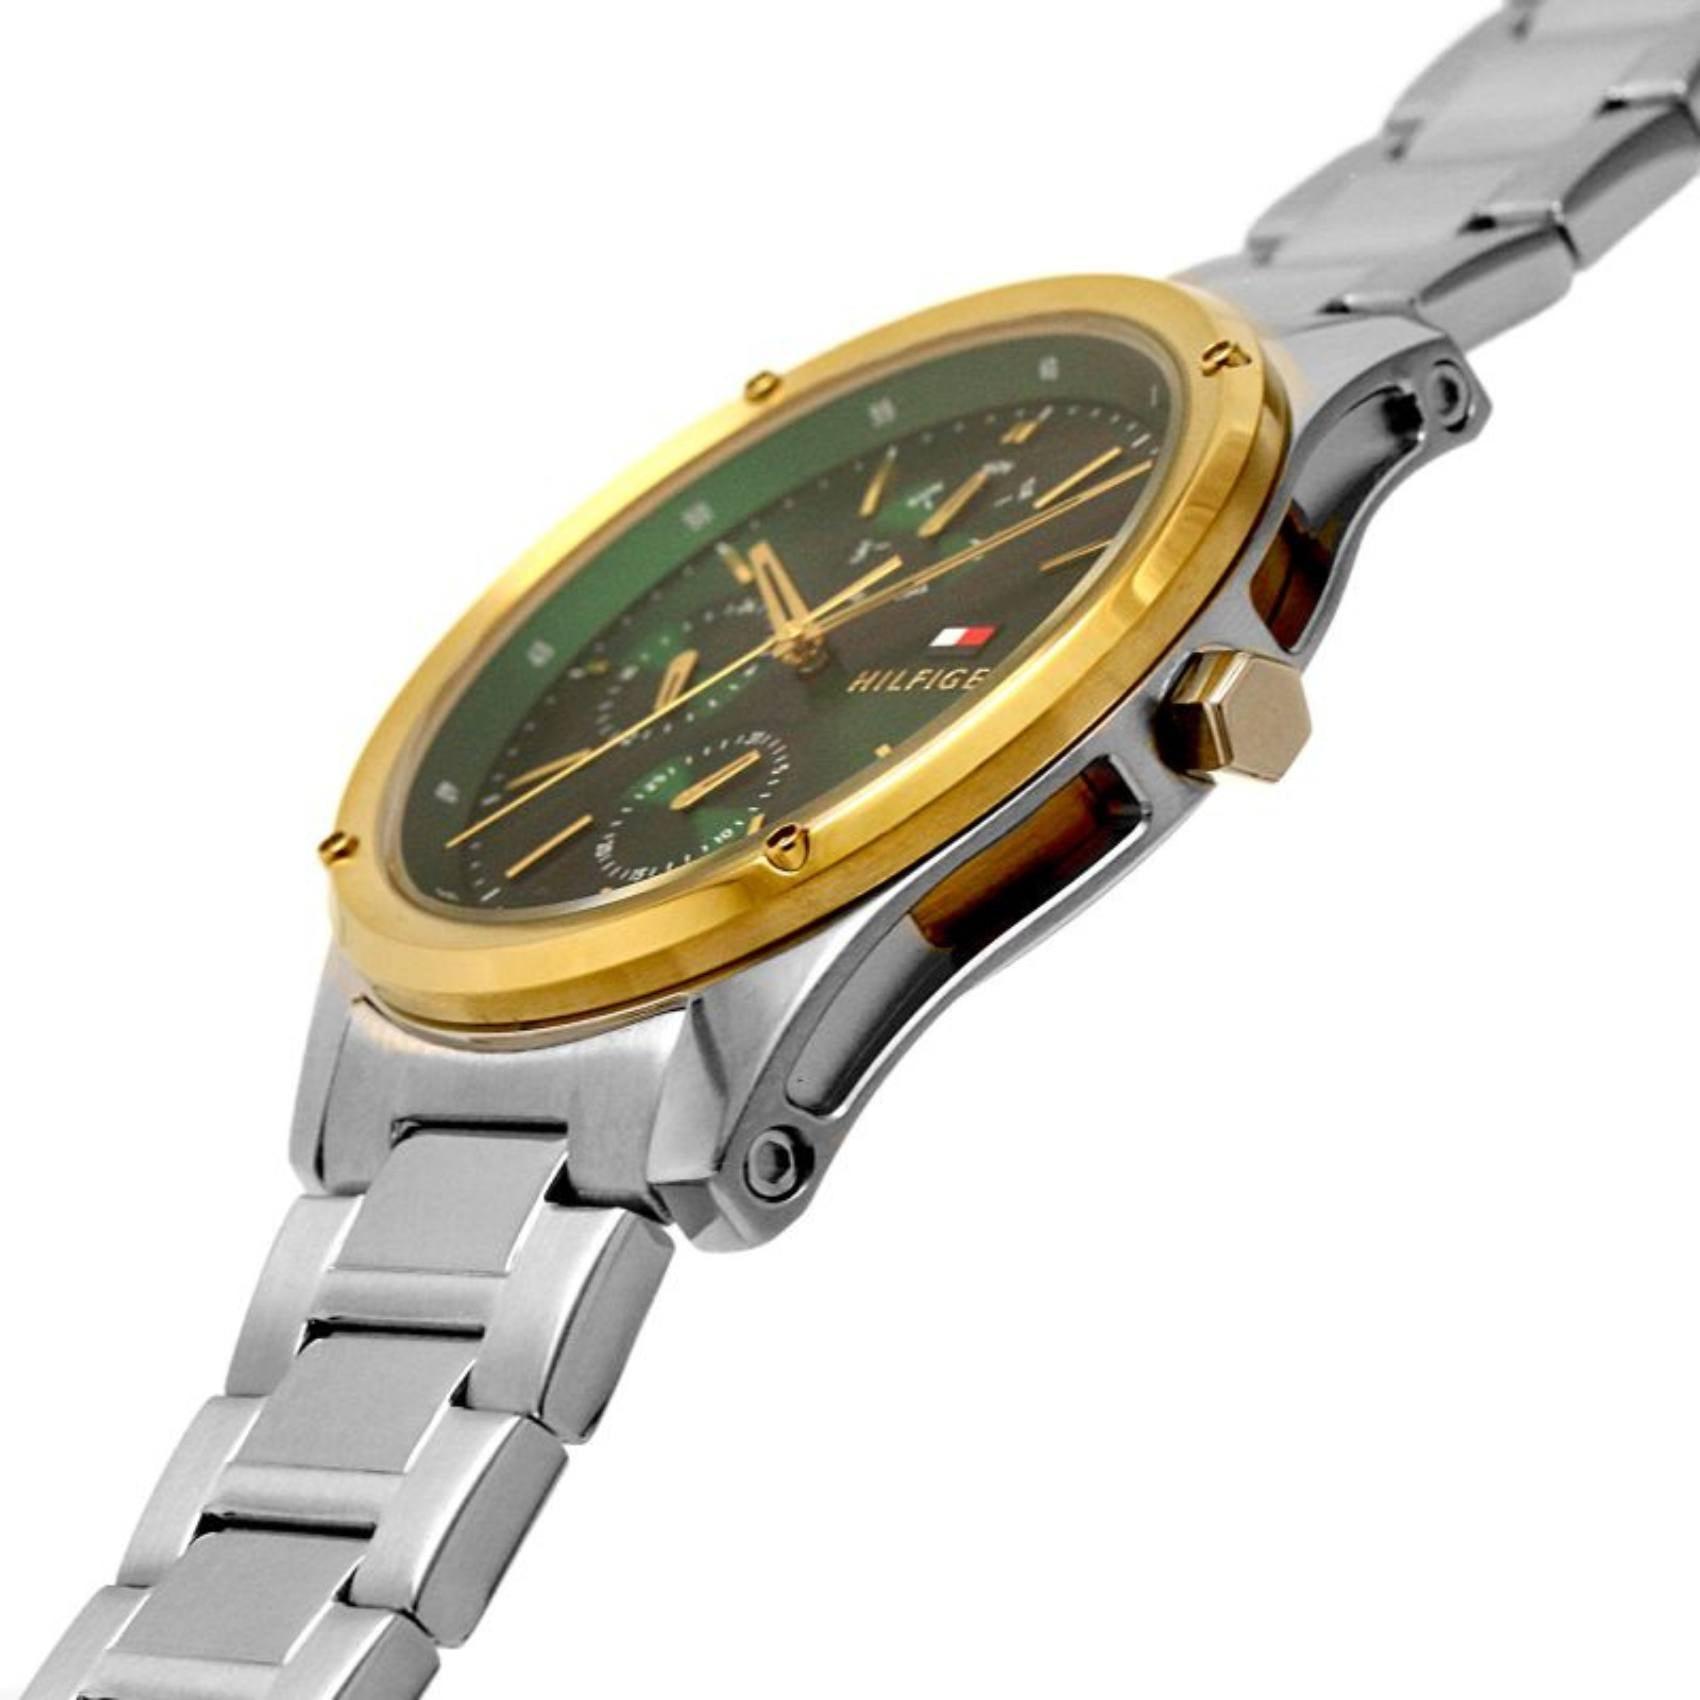 Ρολόι Tommy Hilfiger Tyler 1710537, με ασημί μπρασελέ και πράσινο καντράν διαμέτρου 46mm με ένδειξη ημερομηνίας και ημέρας.